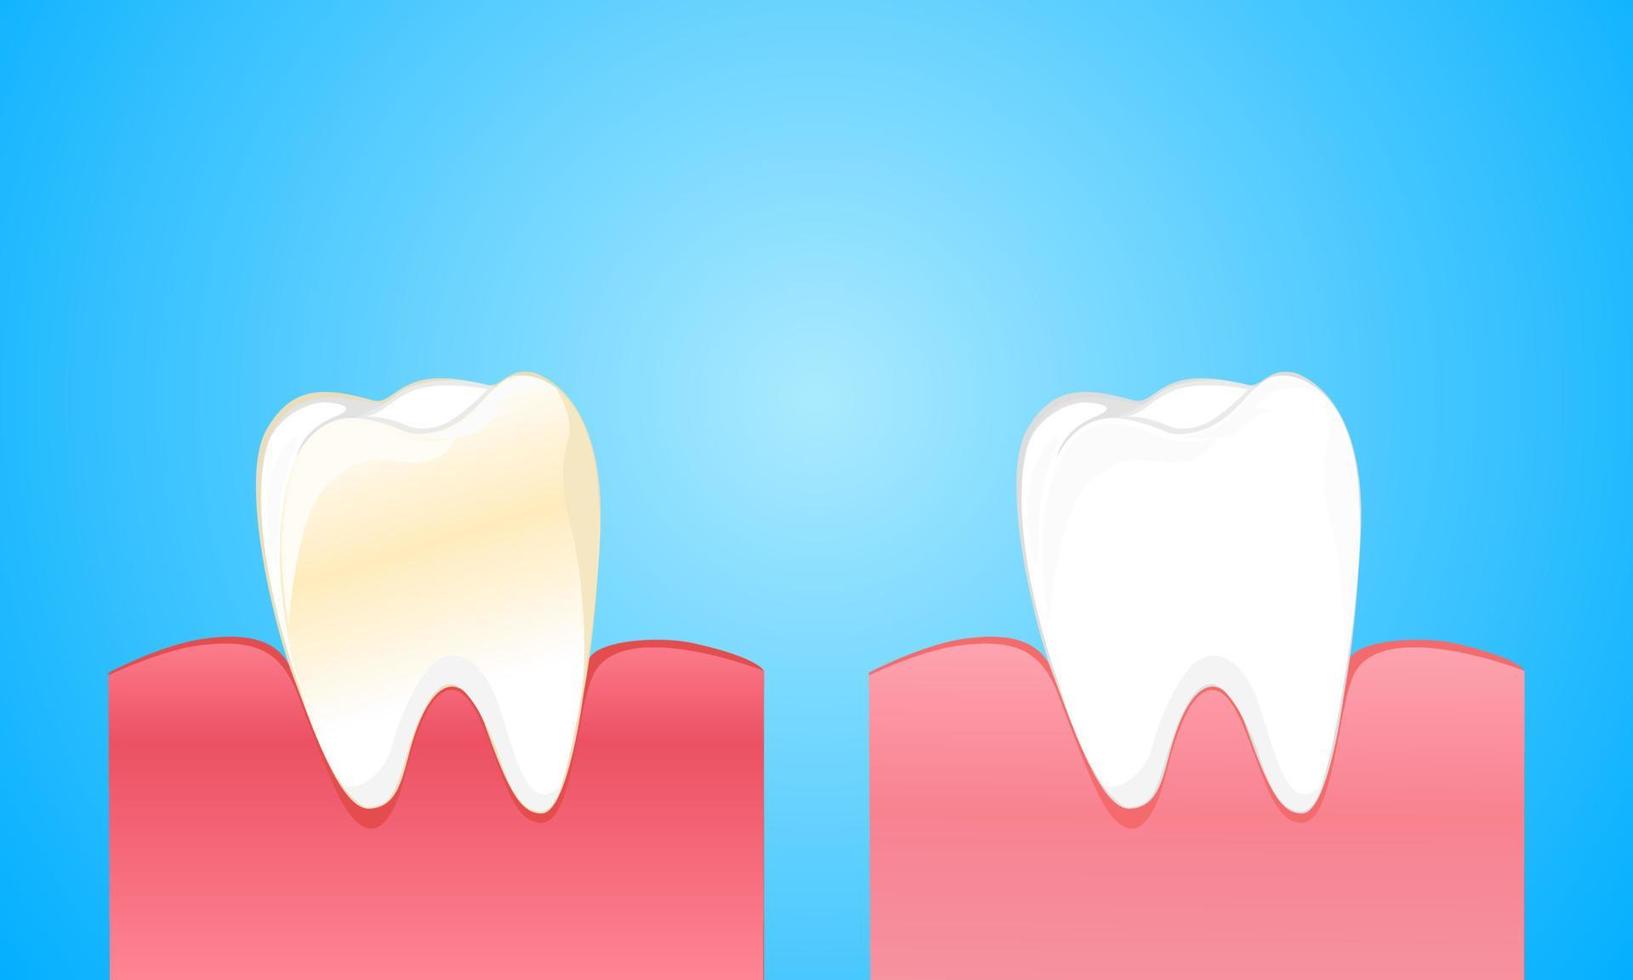 Comparar dientes y encías sucios con dientes blancos limpios y fuertes vector